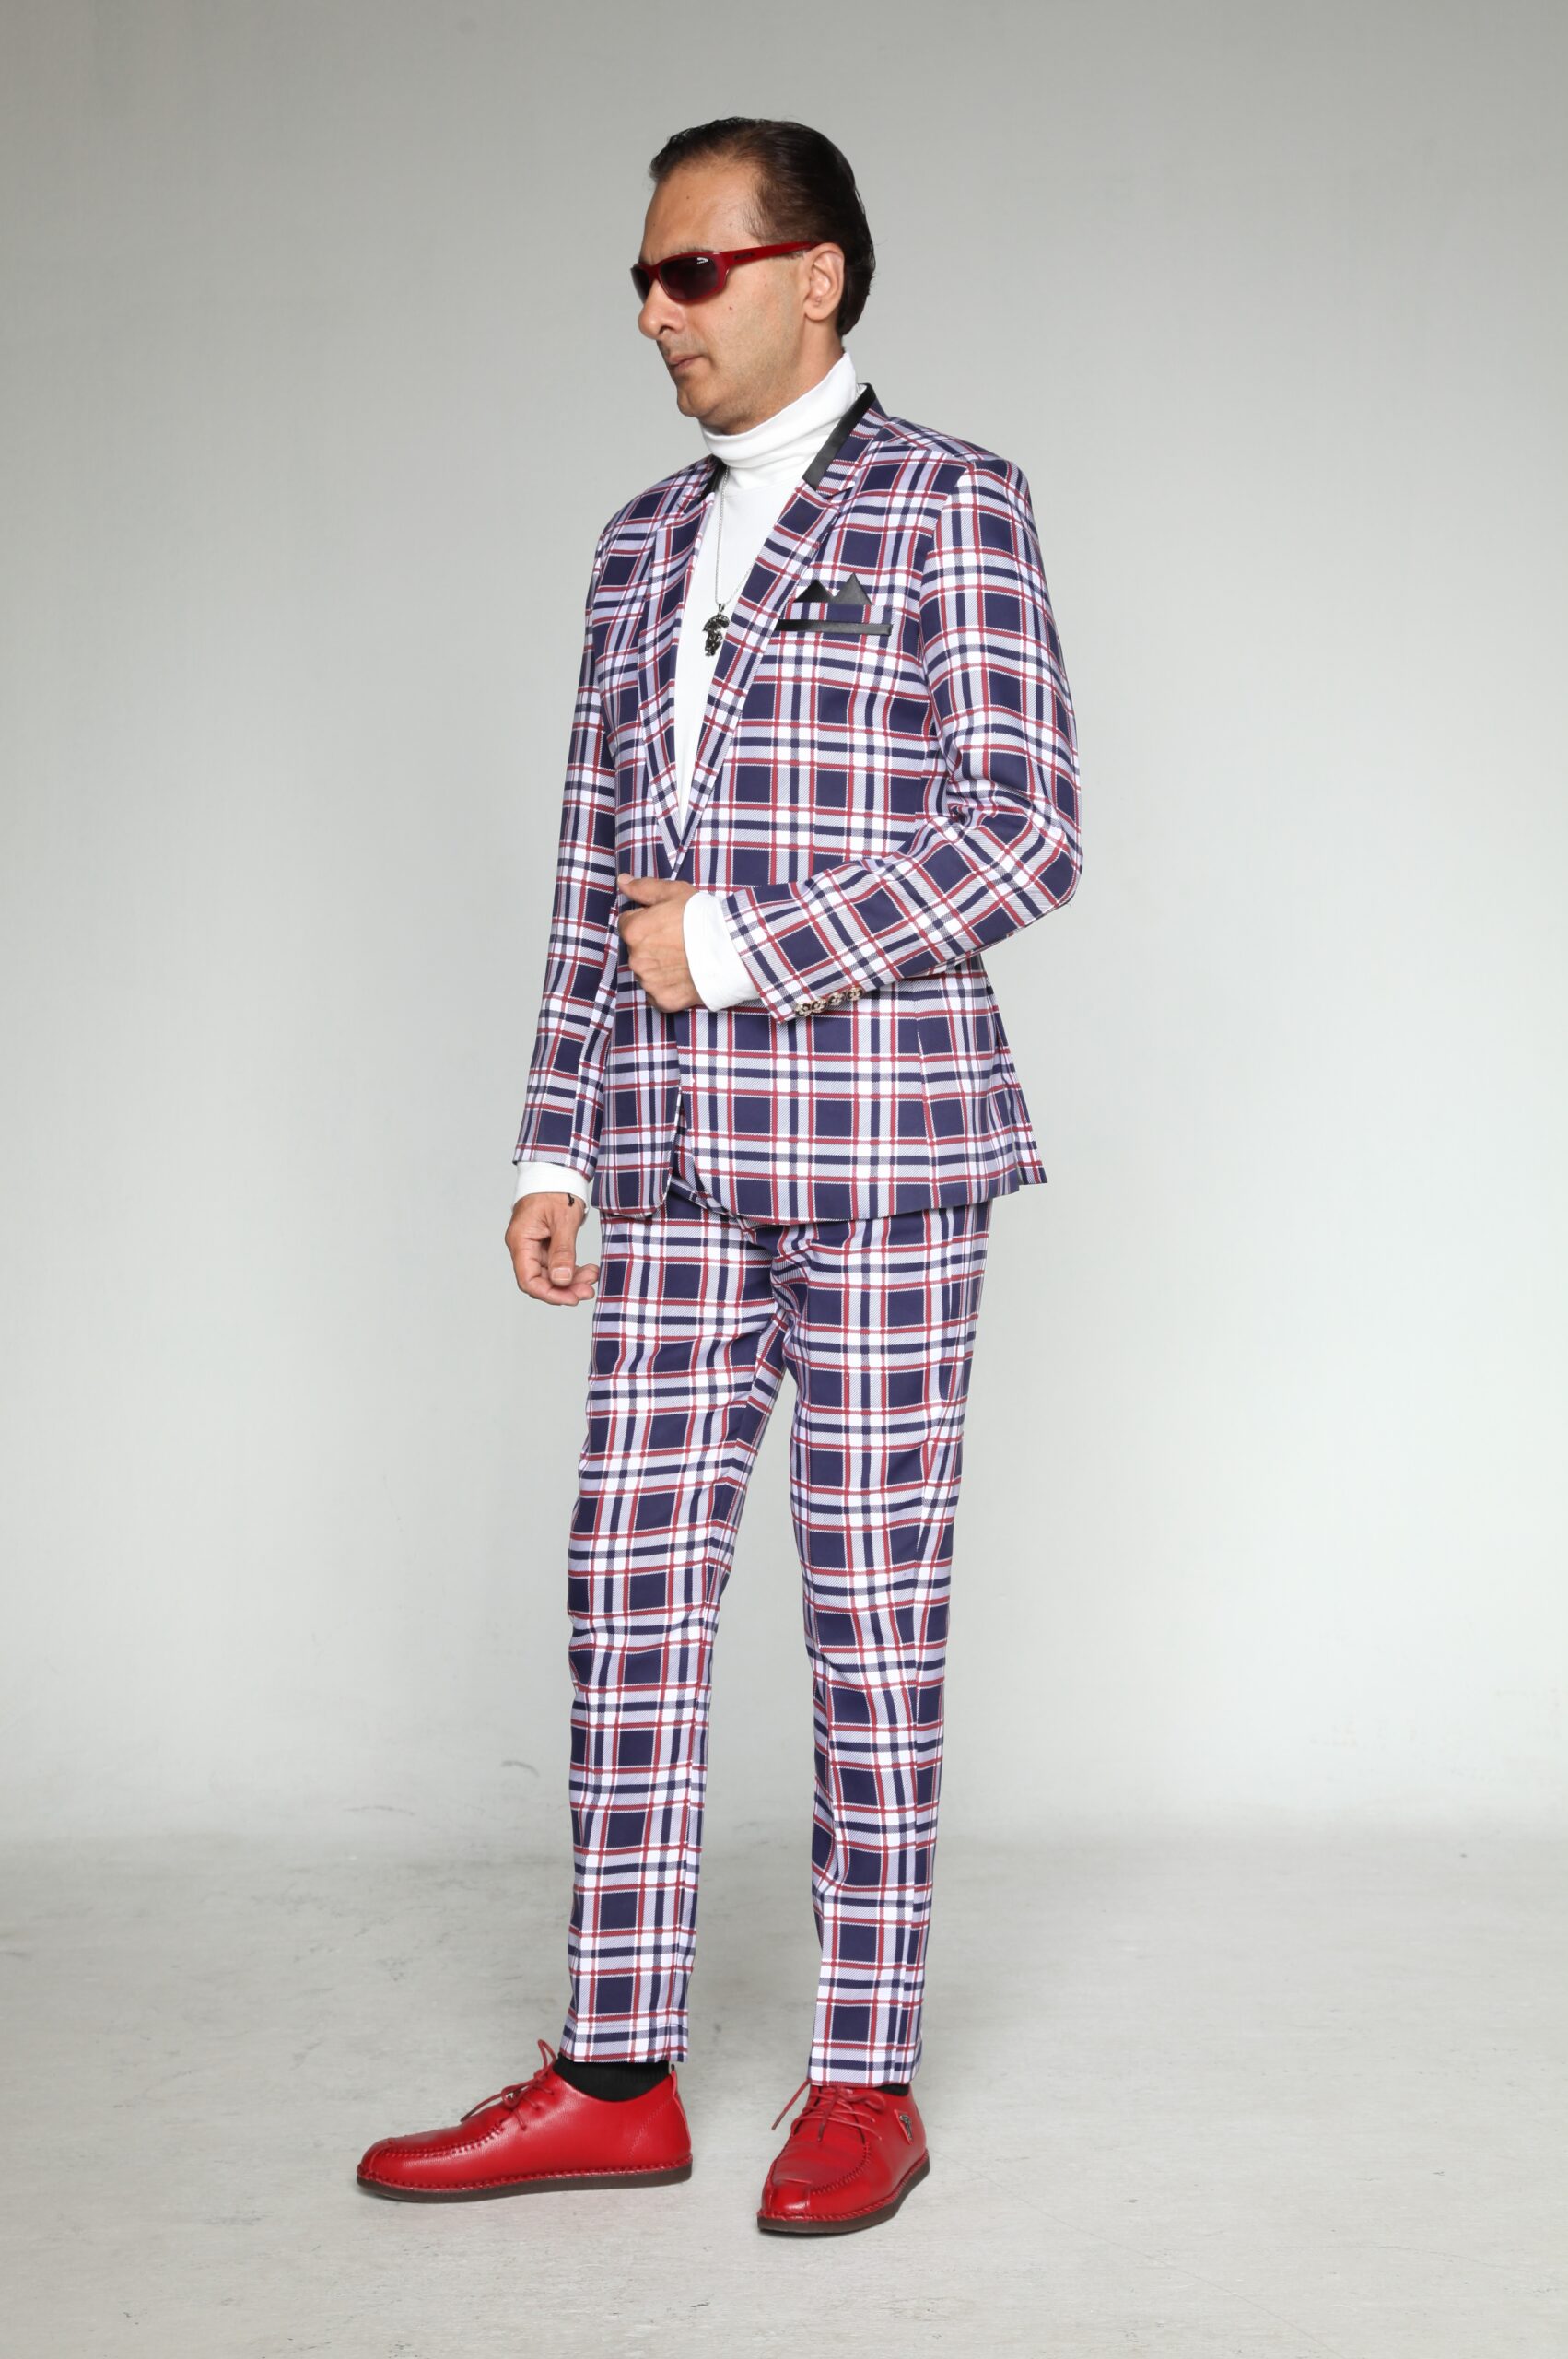 MST-5004-01-rent_rental_hire_tuxedo_suit_black_tie_suit_designer_suits_shop_tailor